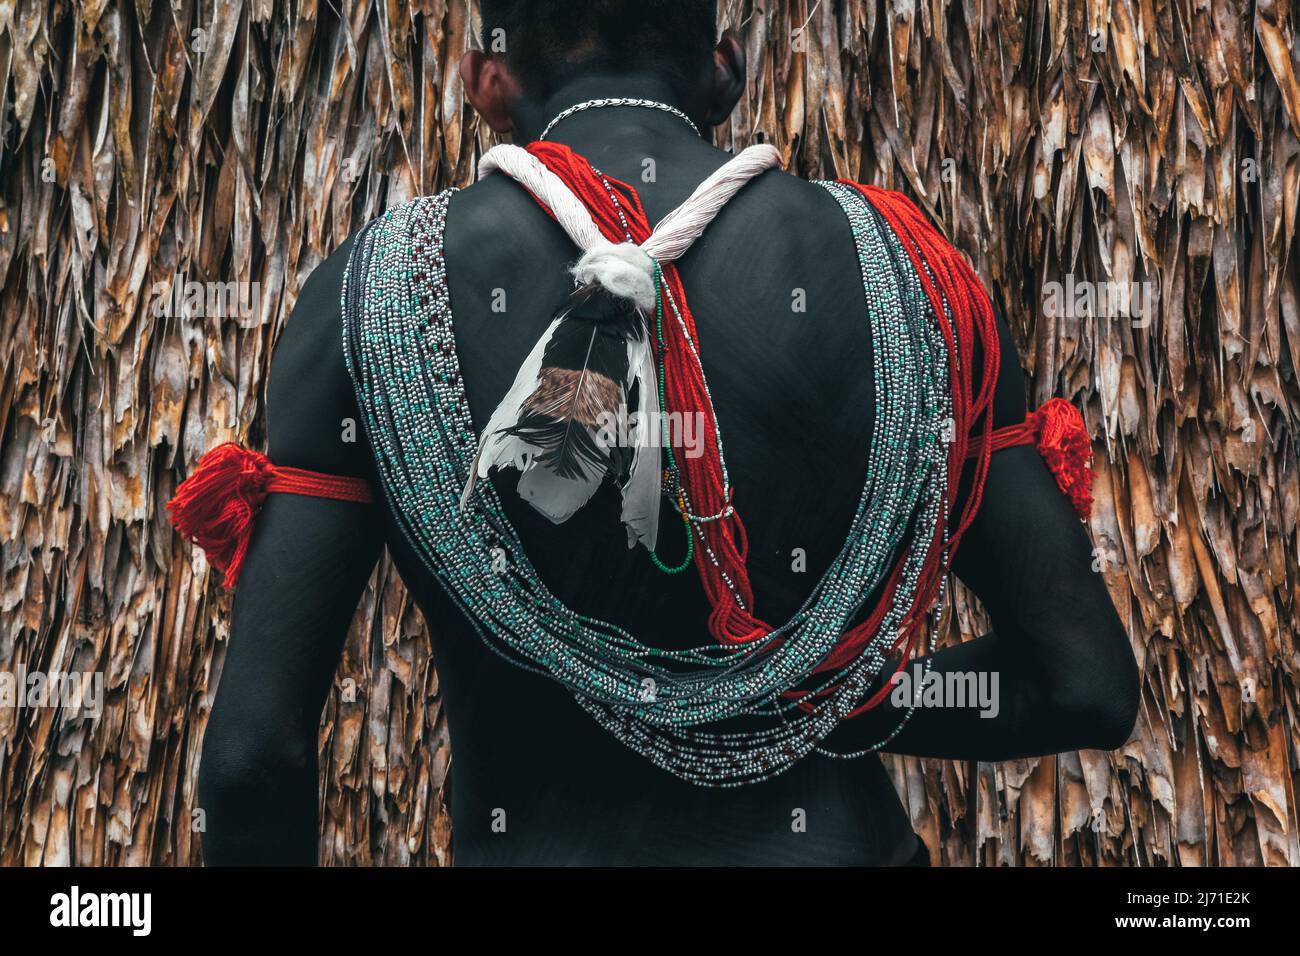 Détail d'ornement ou de bijoux sur le dos d'un indien d'une tribu amazonienne brésilienne, prenant part aux Jeux autochtones. 2010. Banque D'Images